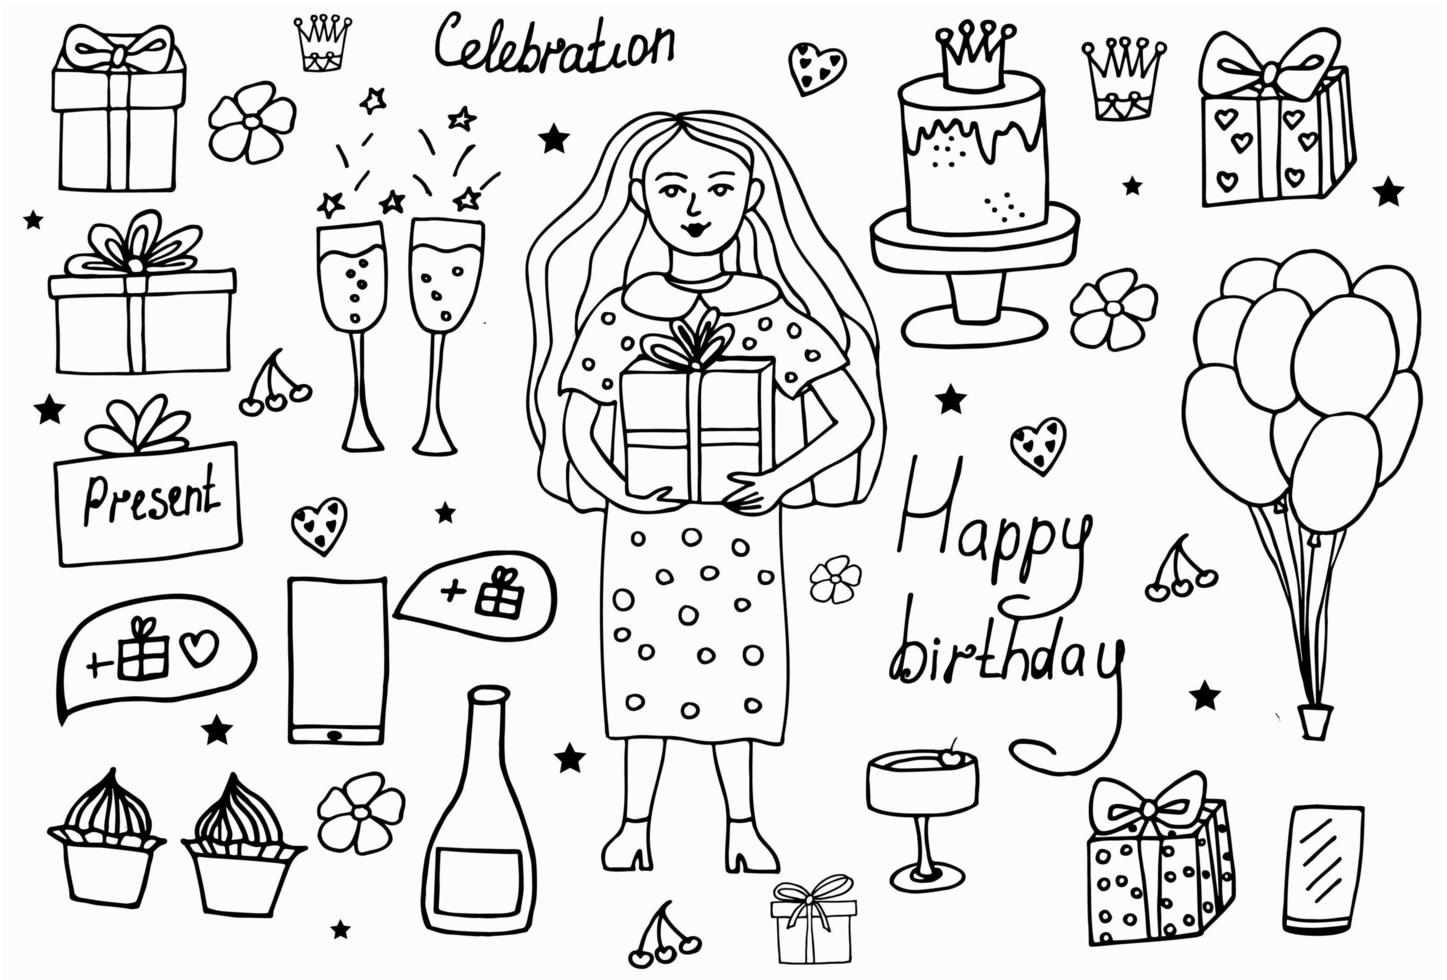 uppsättning handritade doodle tecknade objekt och symboler på födelsedagsfesten. design semester gratulationskort och inbjudan till bröllop, glad mors dag, födelsedag, alla hjärtans dag och helgdagar vektor